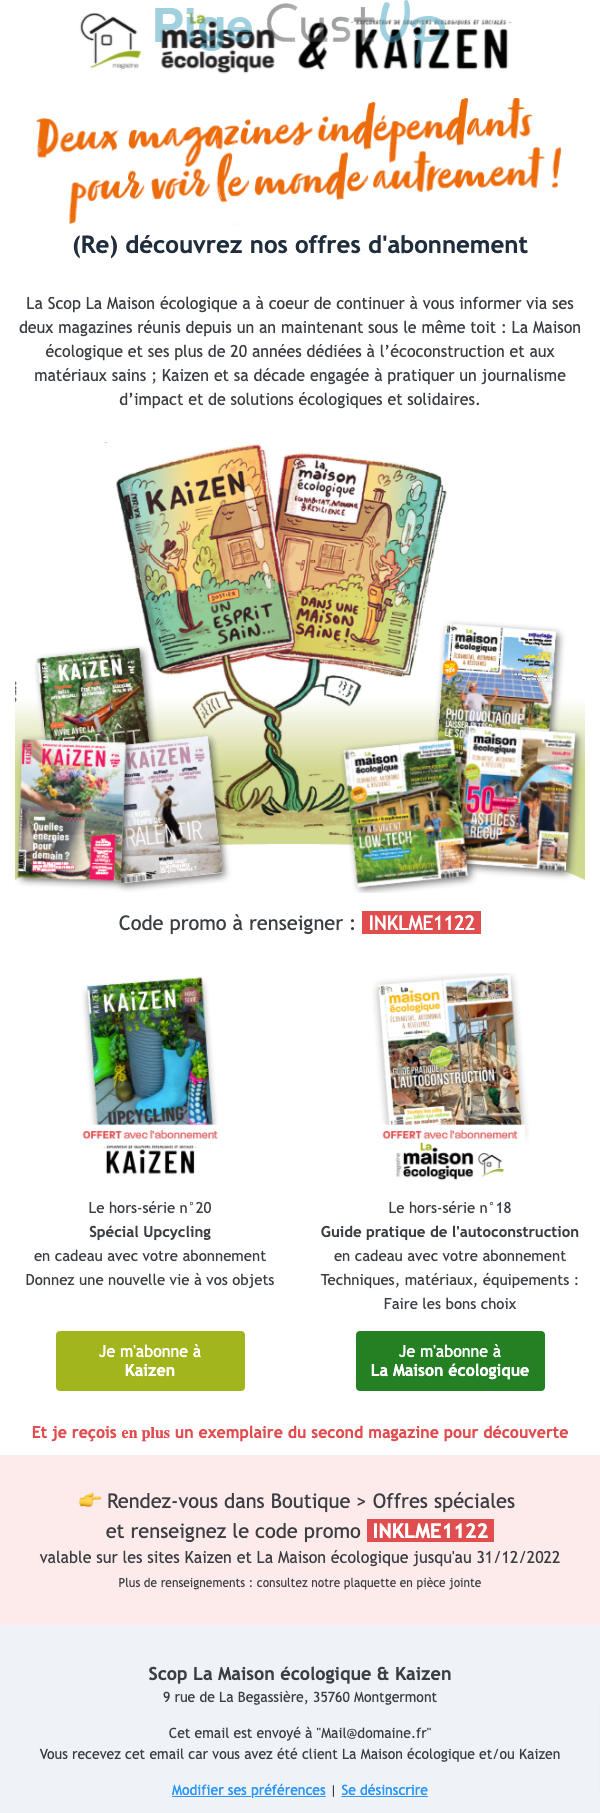 Exemple de Type de media  e-mailing - Kaizen - Marketing Acquisition - Acquisition abonnements